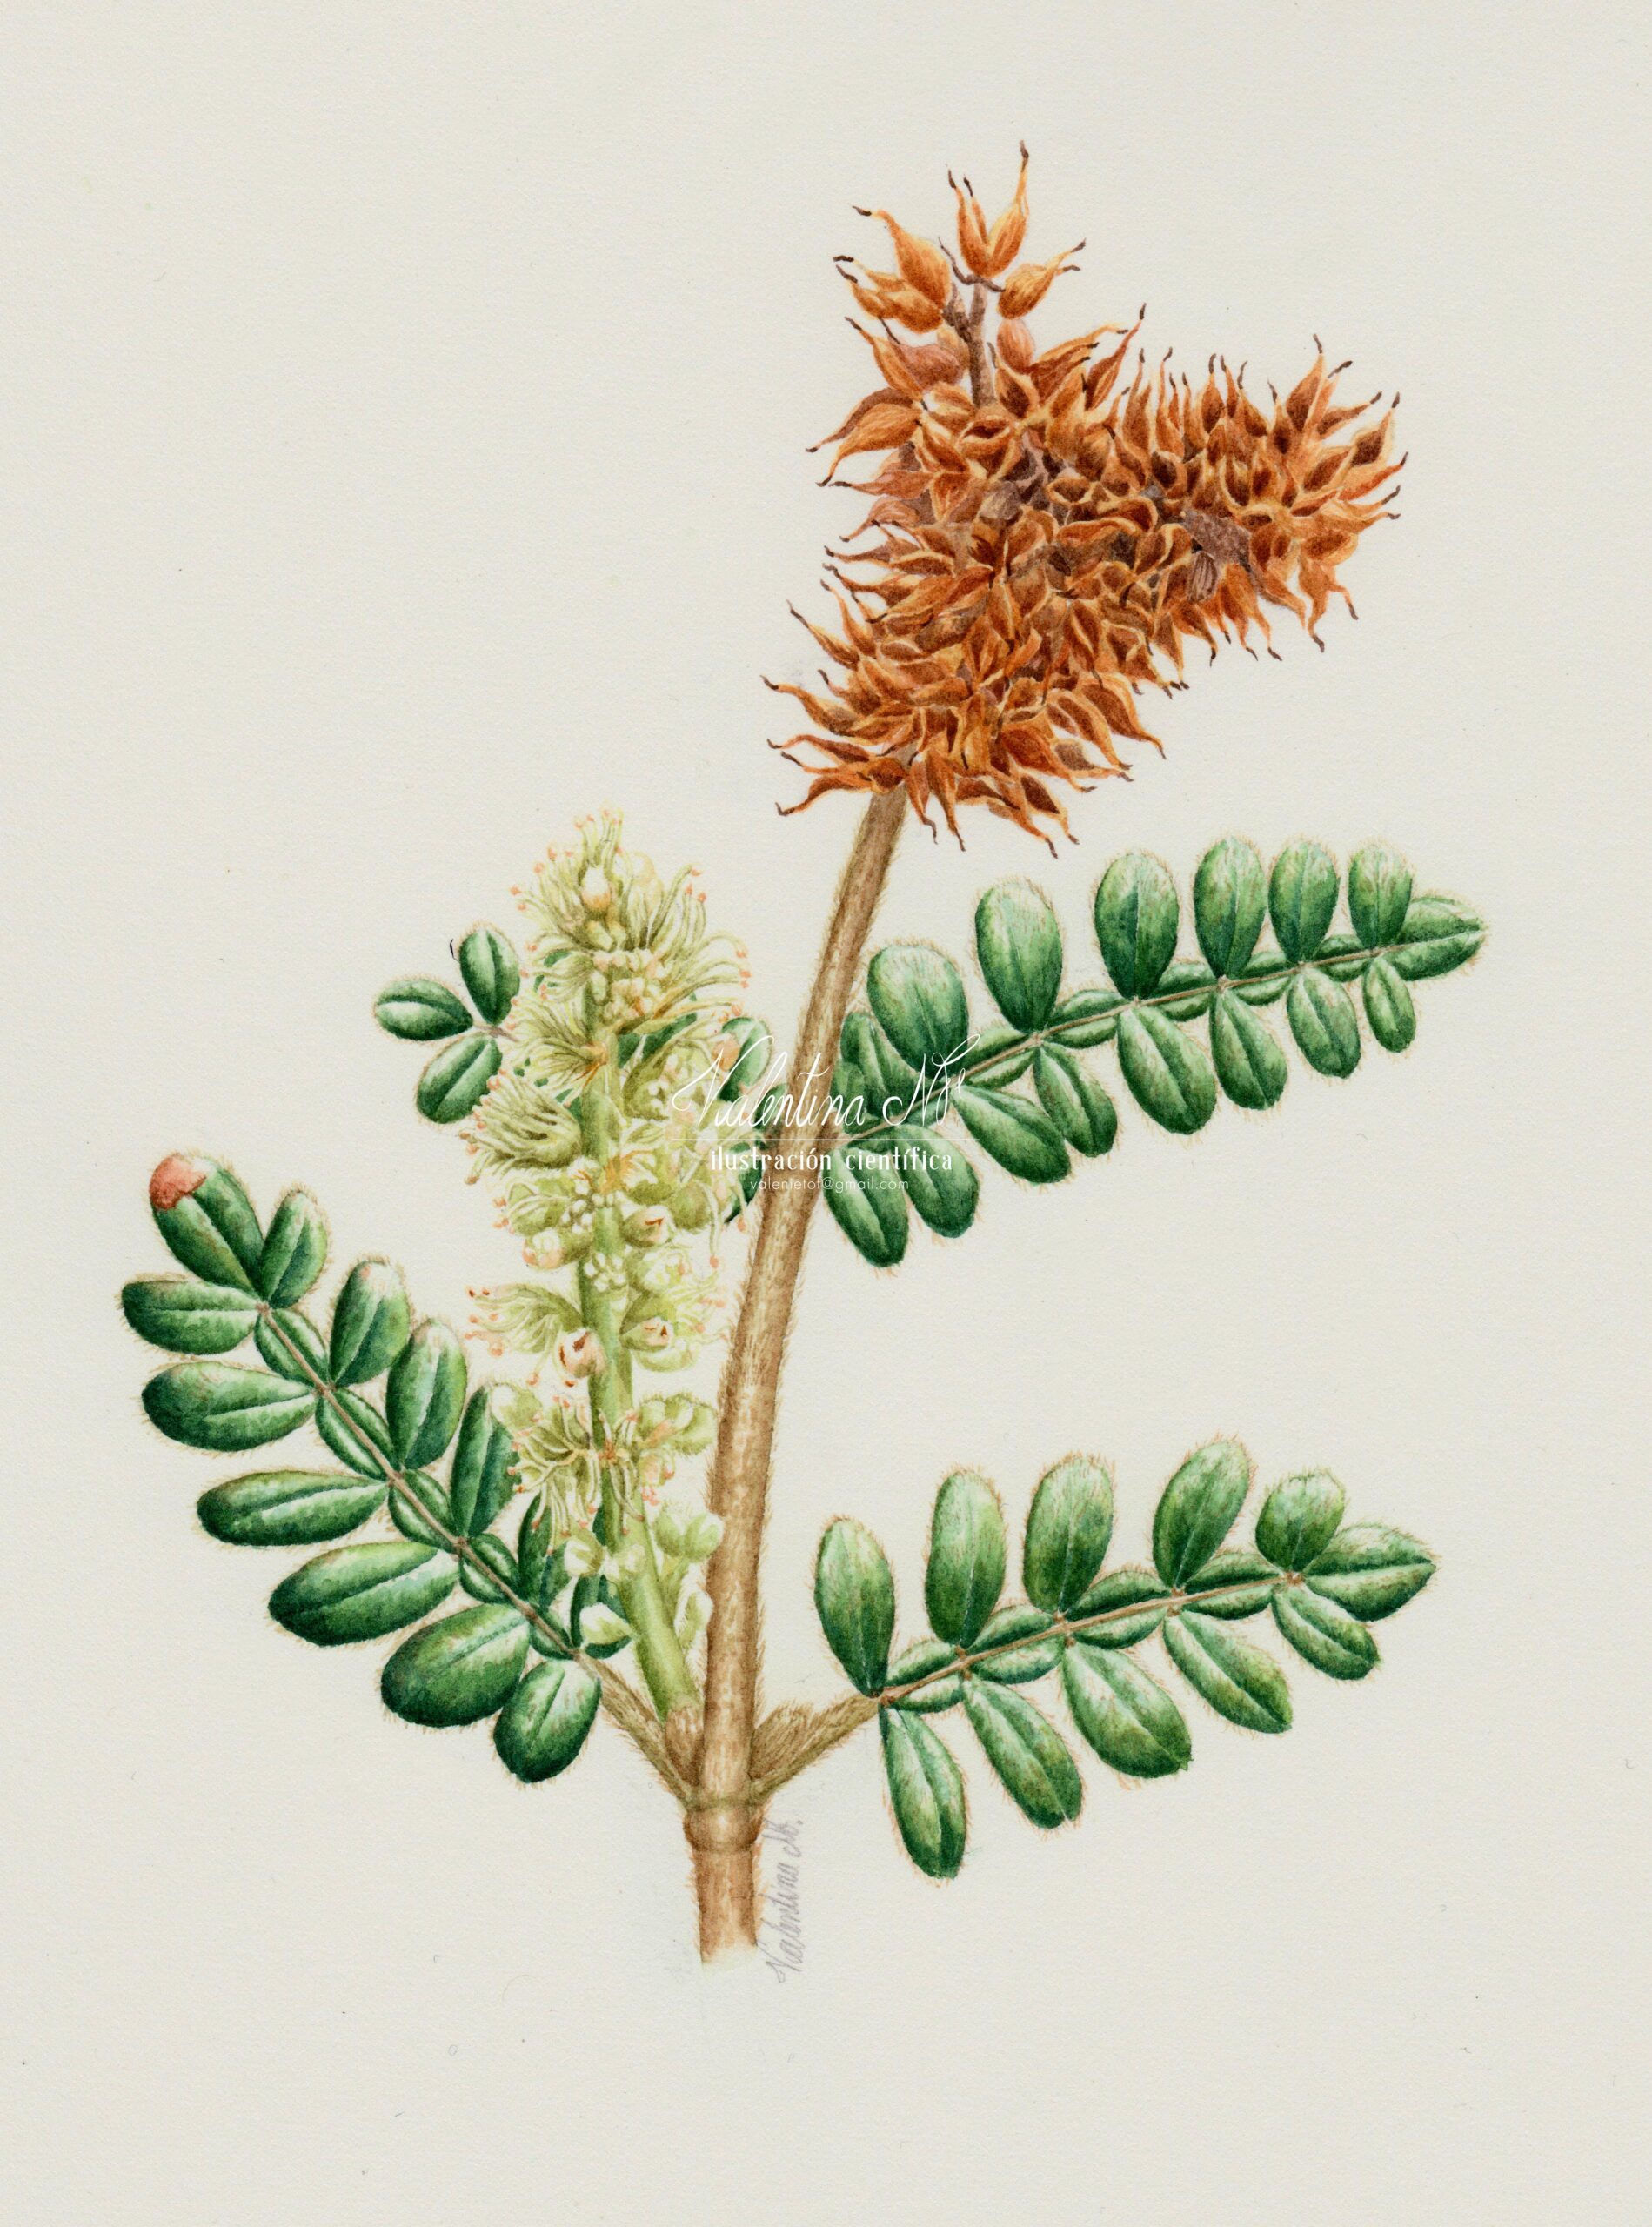 Weinmannia tomentosa